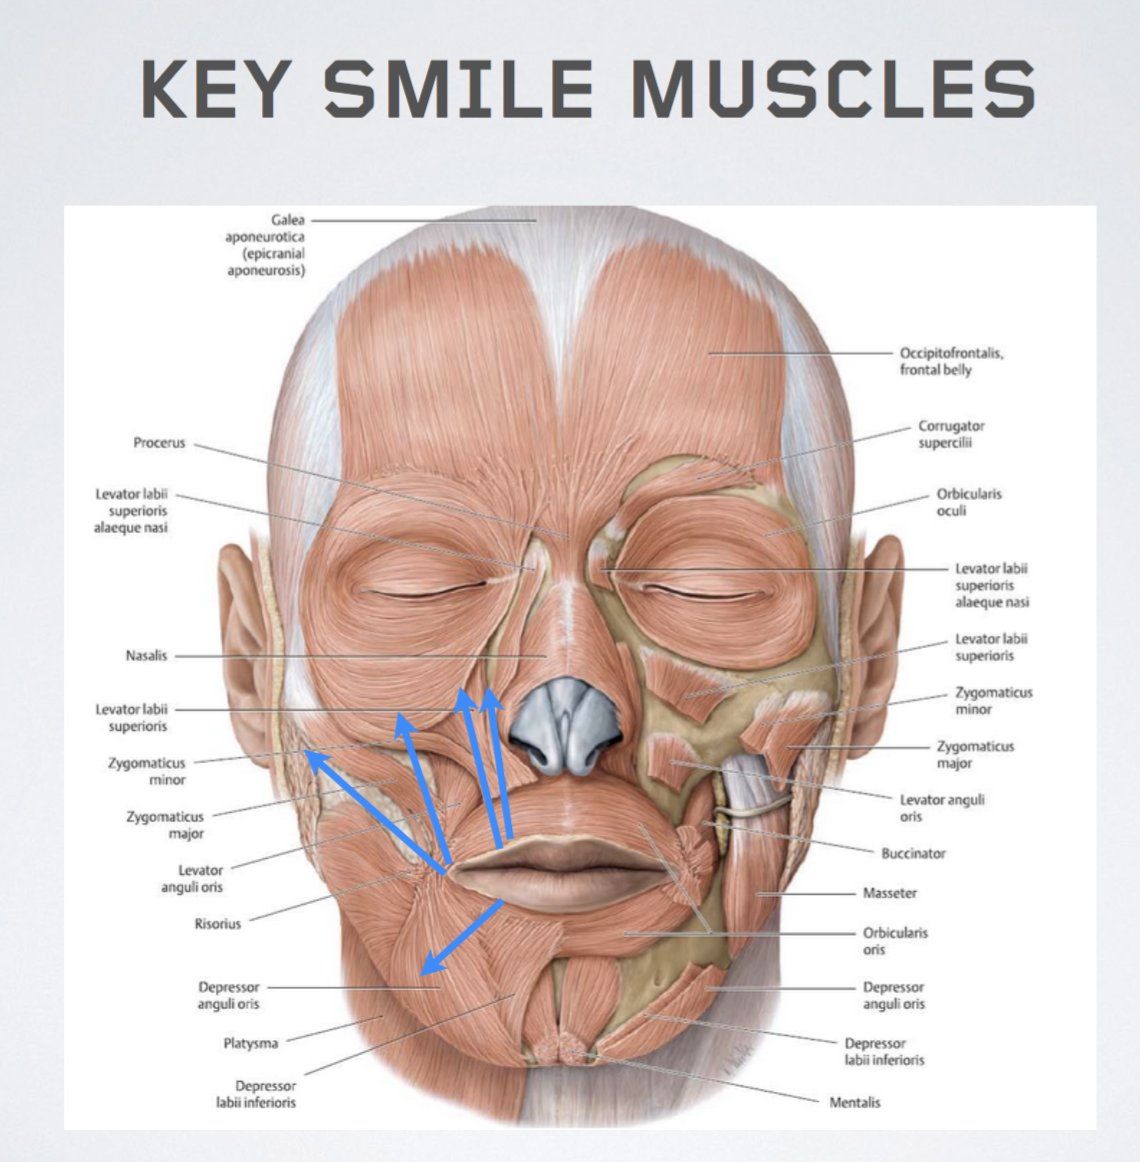 facial nerve palsy diagram